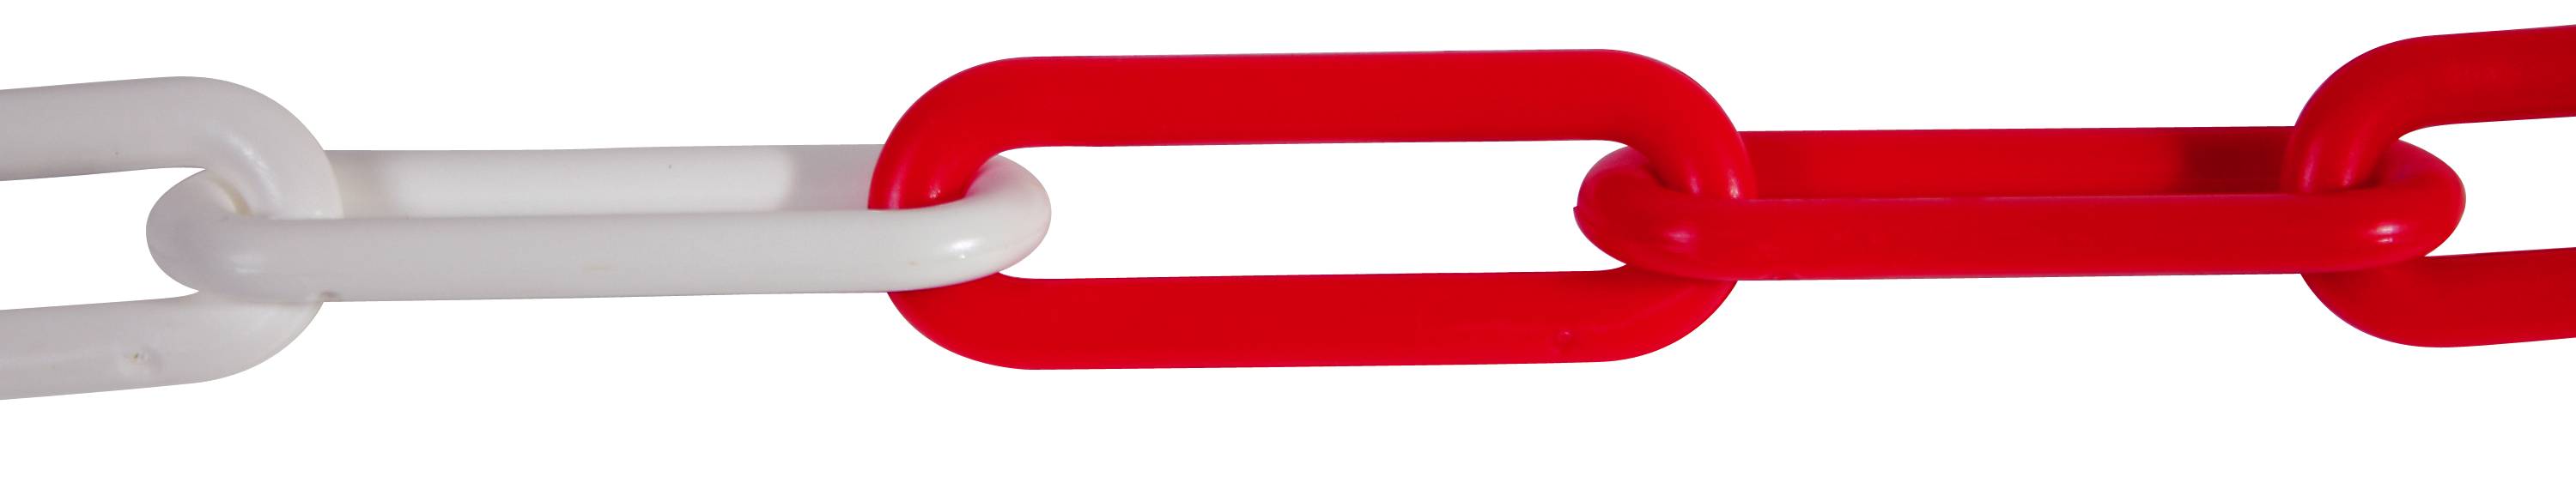 6mm Red/White Polyethylene Chain - 25 metre length [Infill Stock]